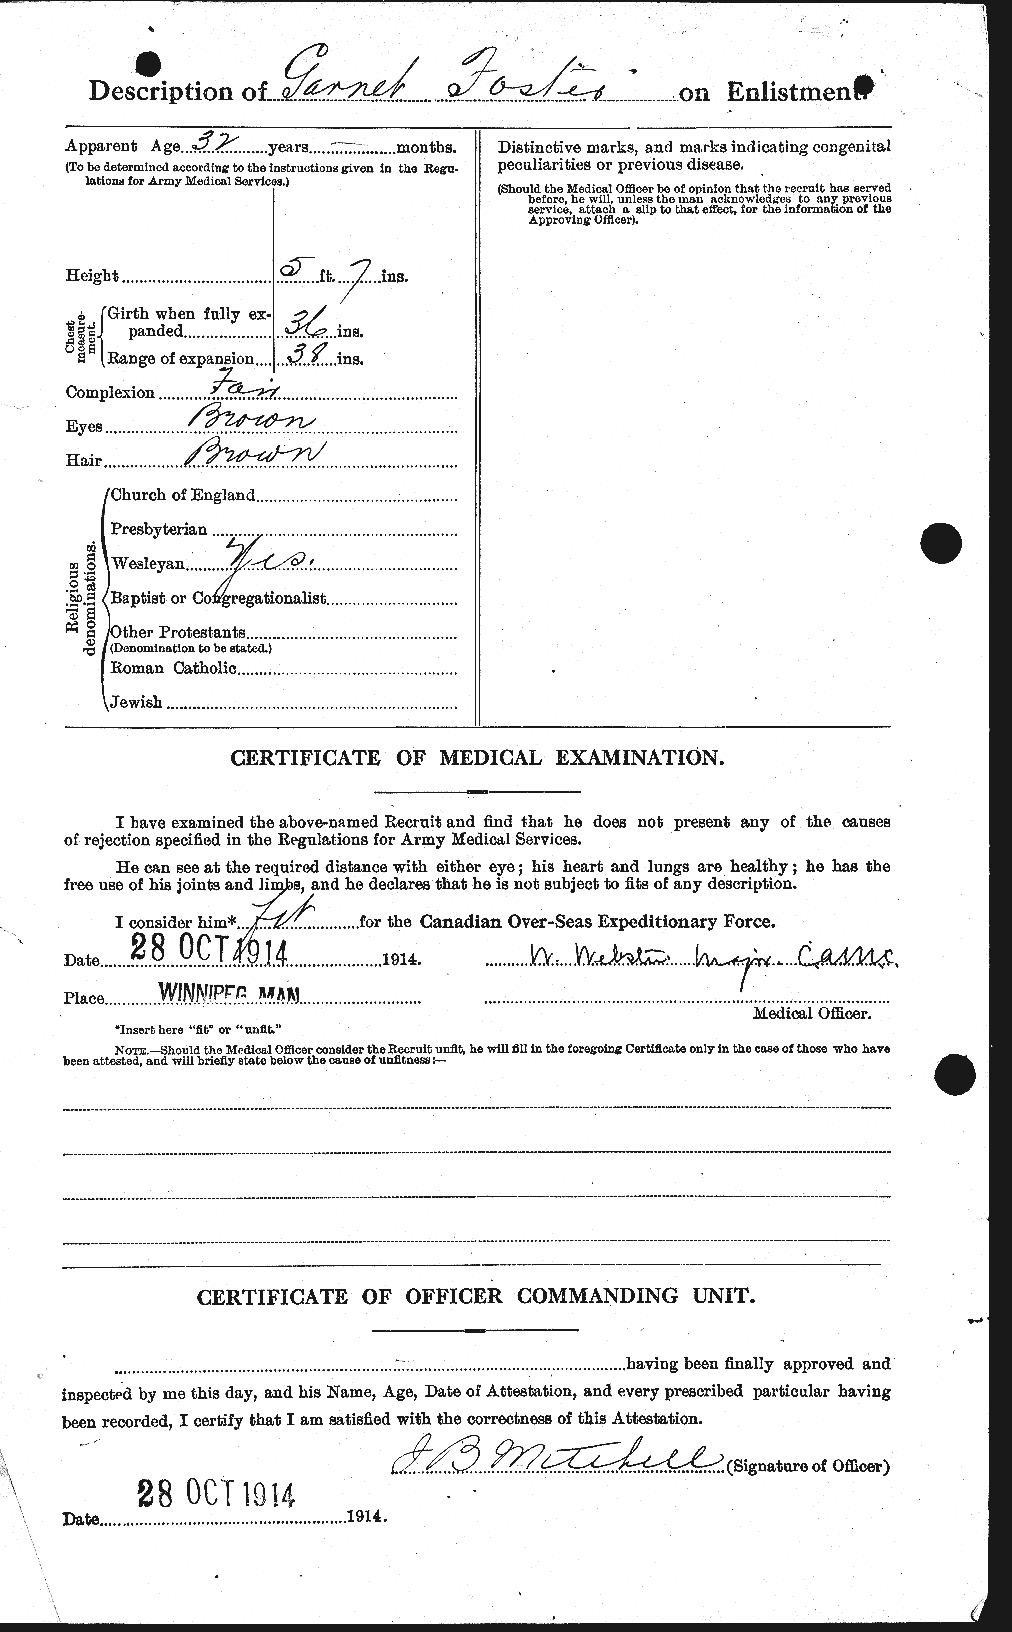 Dossiers du Personnel de la Première Guerre mondiale - CEC 330658b